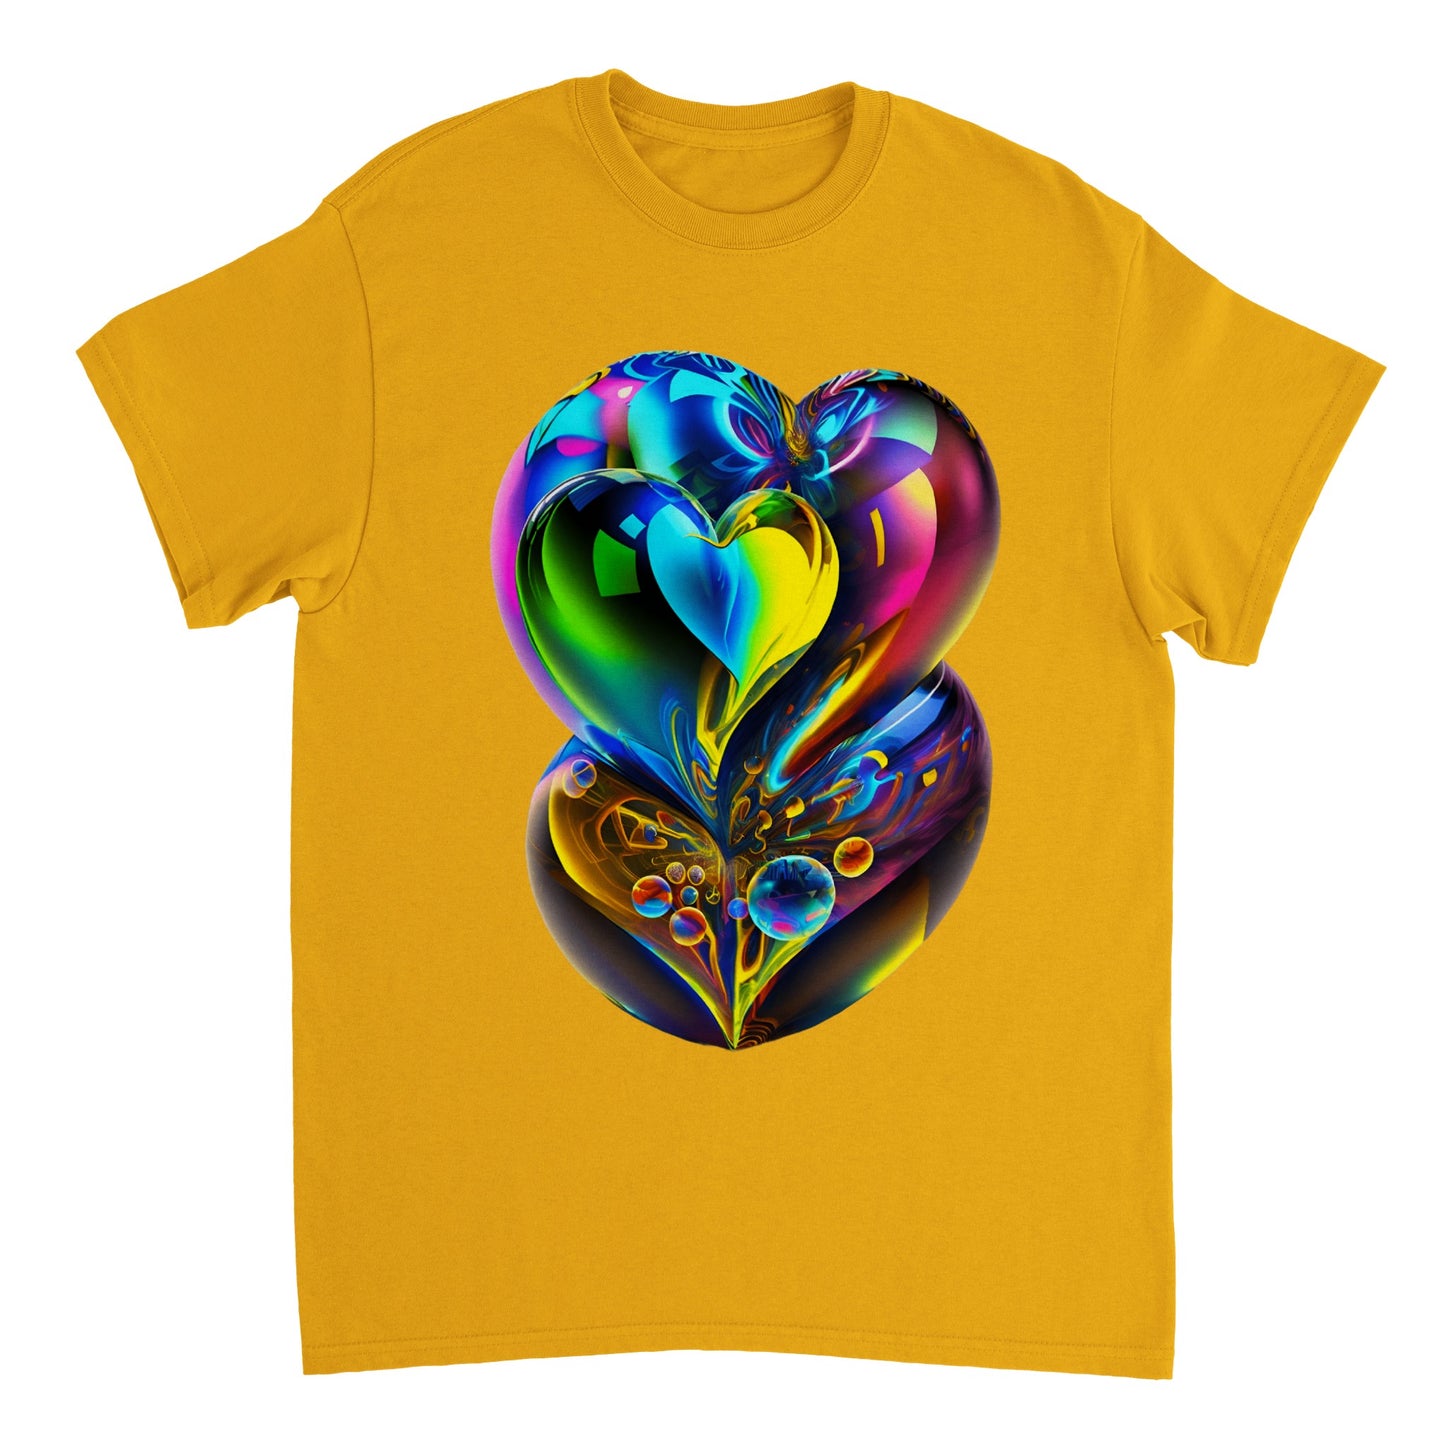 Love Heart - Heavyweight Unisex Crewneck T-shirt 8